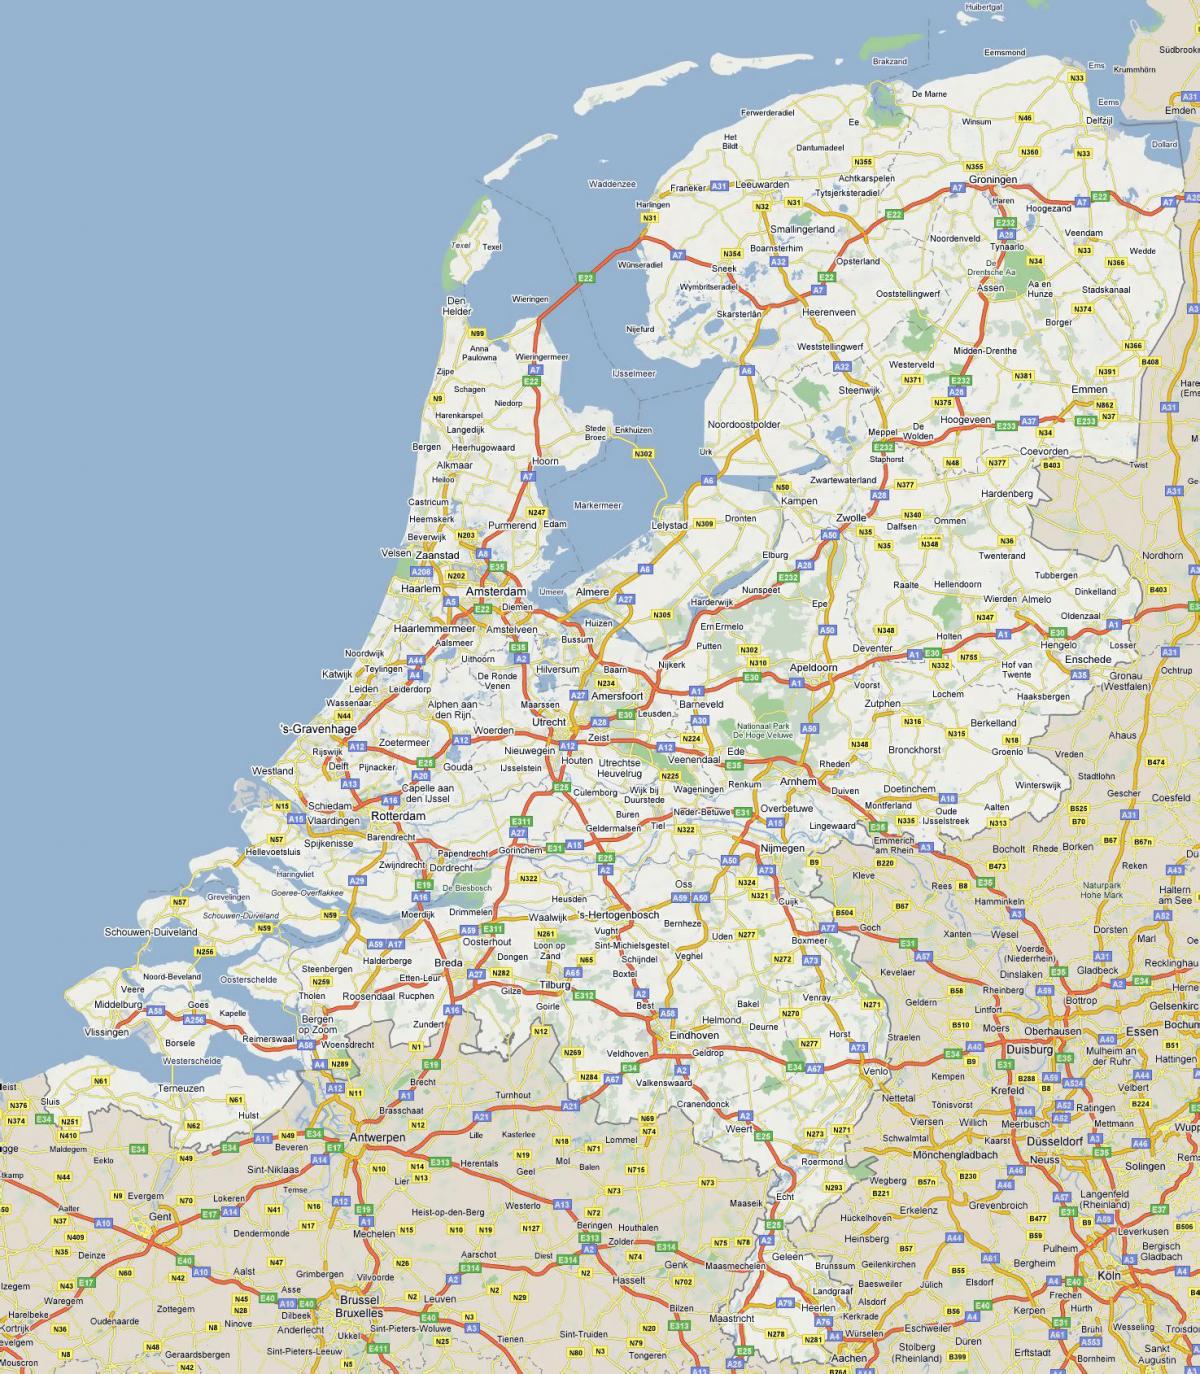 Snelwegkaart van Nederland